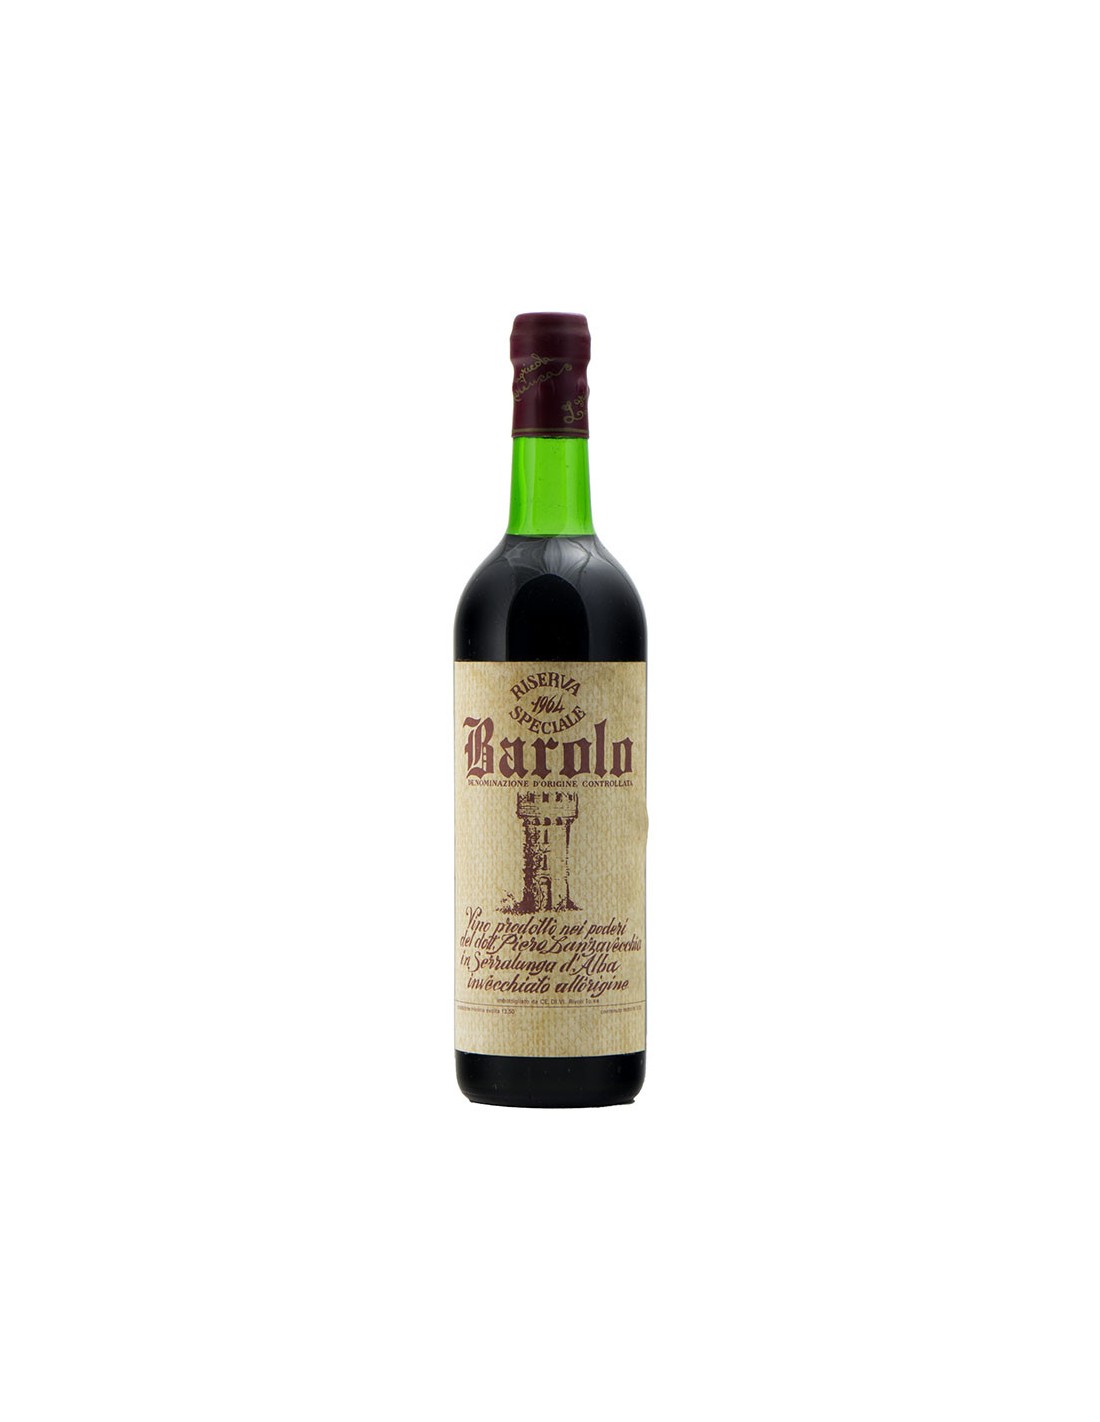 BAROLO RISERVA SPECIALE 1964 CANTINE LANZAVECCHIA Grandi Bottiglie